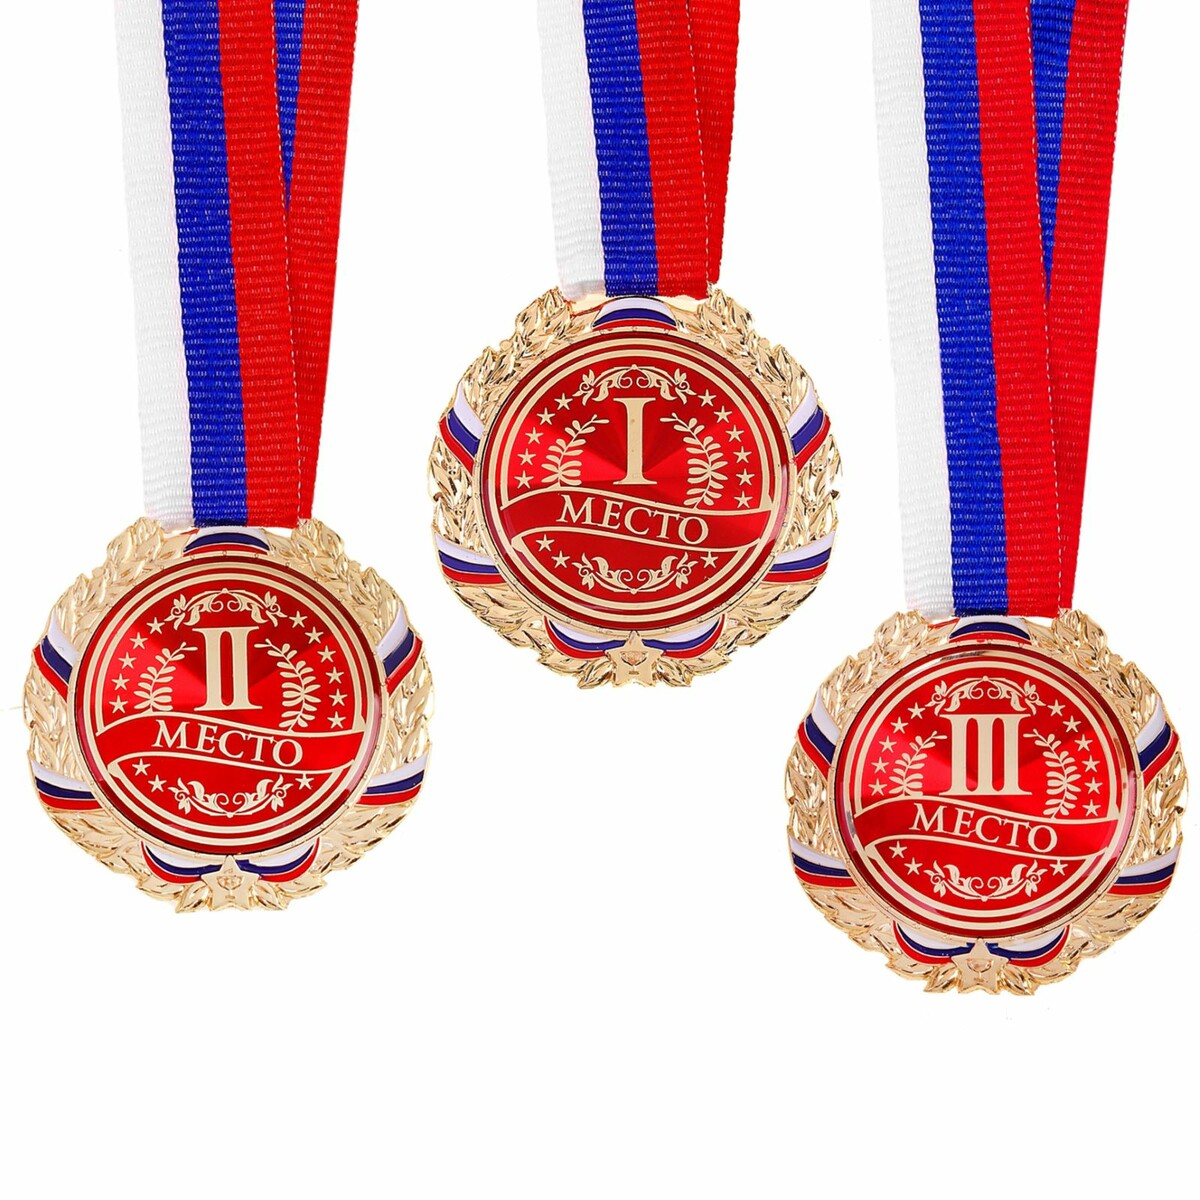 Медаль призовая 006 диам 7 см. 3 место, триколор. цвет бронз. с лентой медаль призовая 193 диам 3 5 см 3 место триколор бронз без ленты